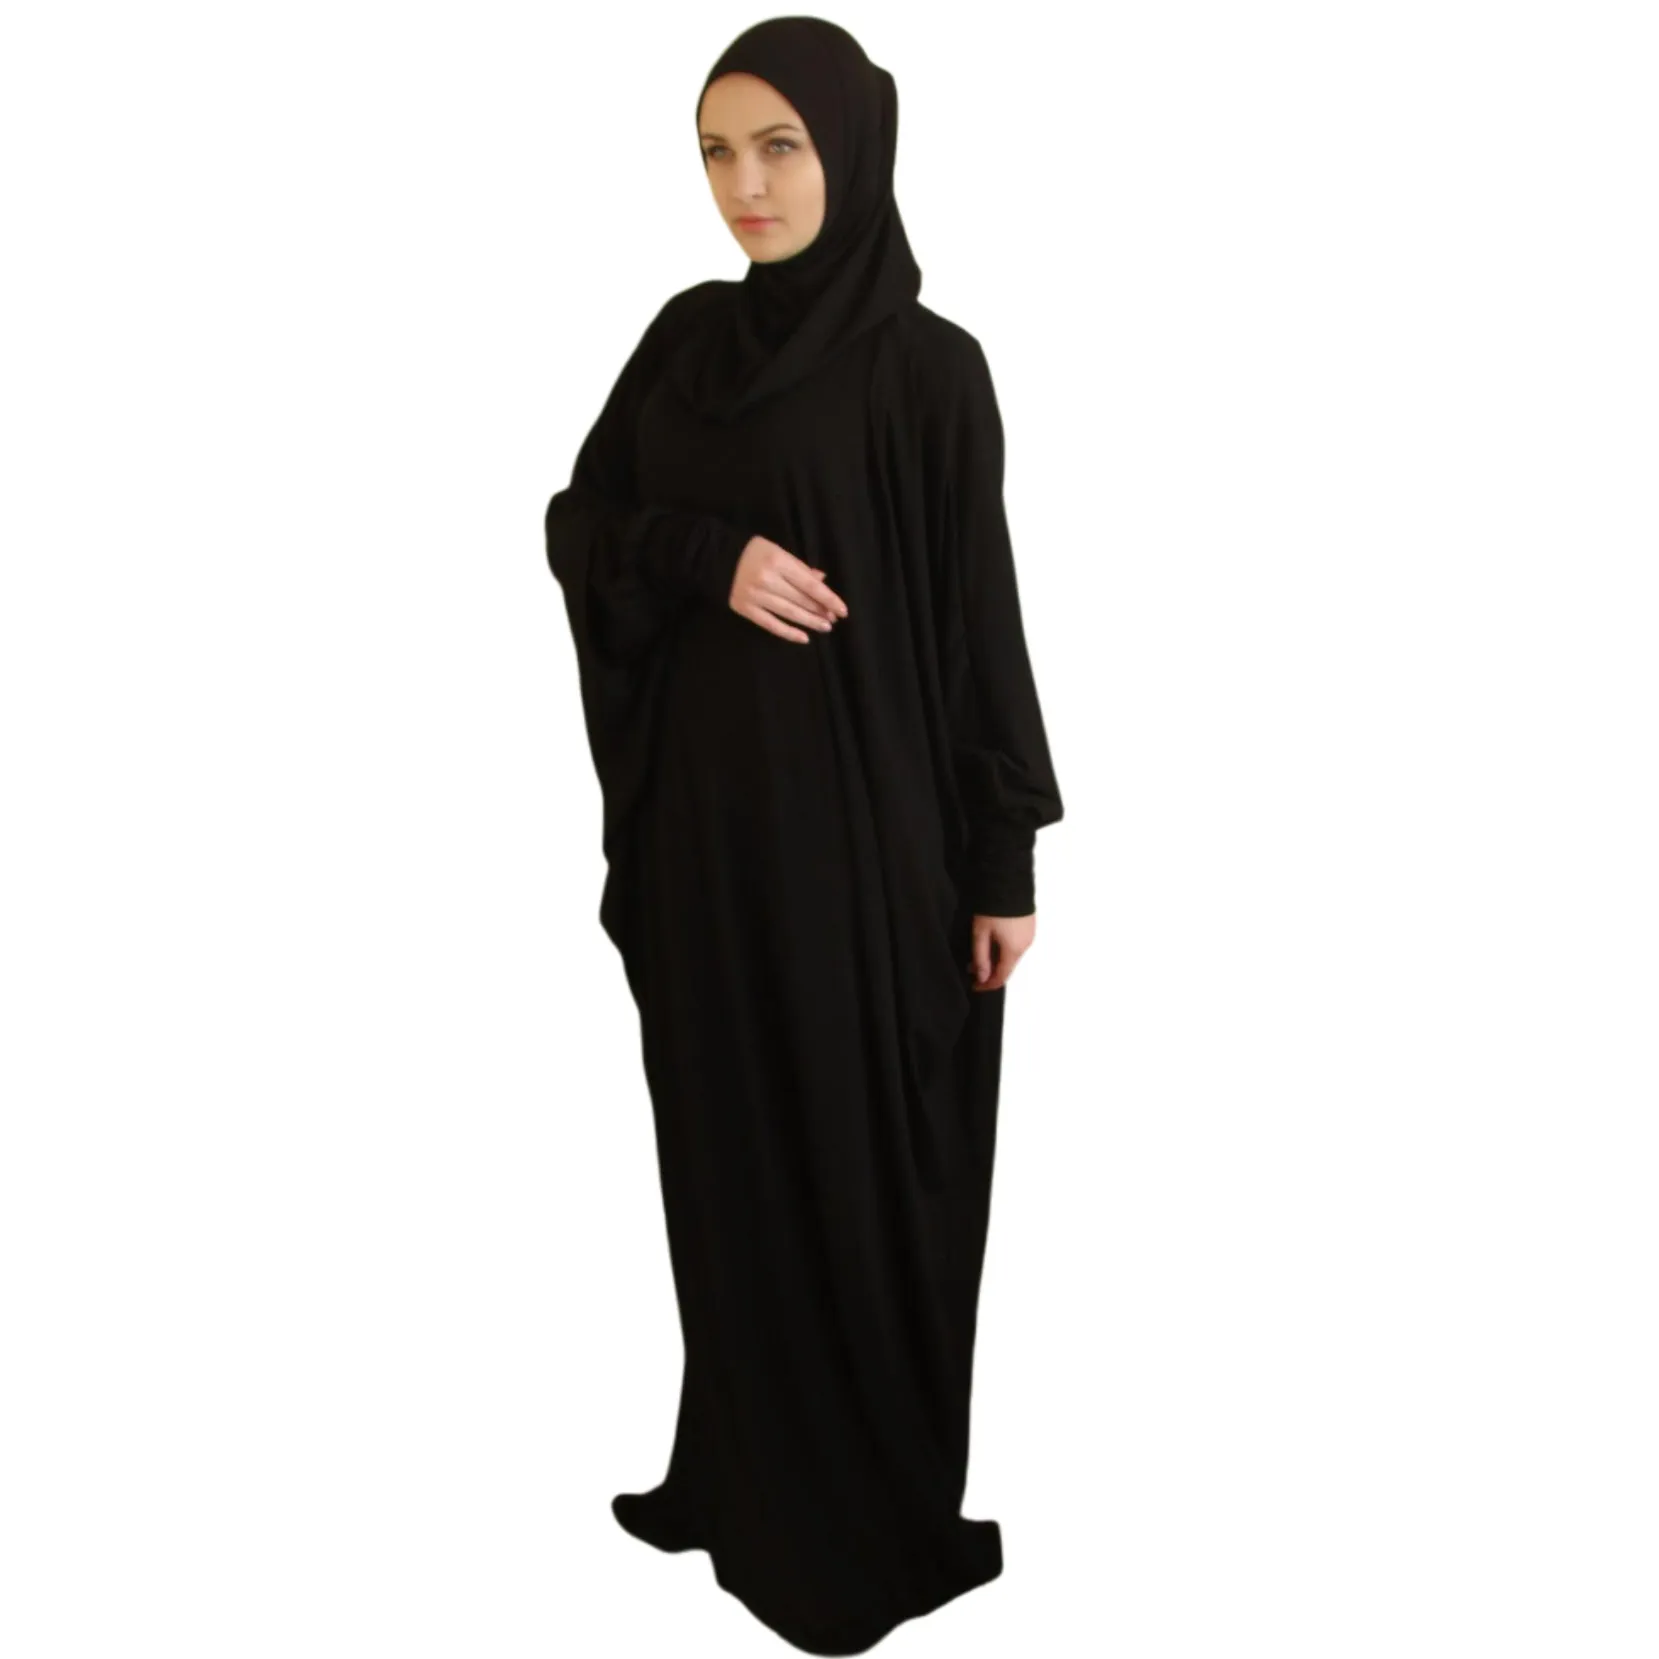 Pas cher vêtements musulmans français jilbab jilbab saoudien 1 pièces arabie saoudite dubai longue robe de prière islamique femelle